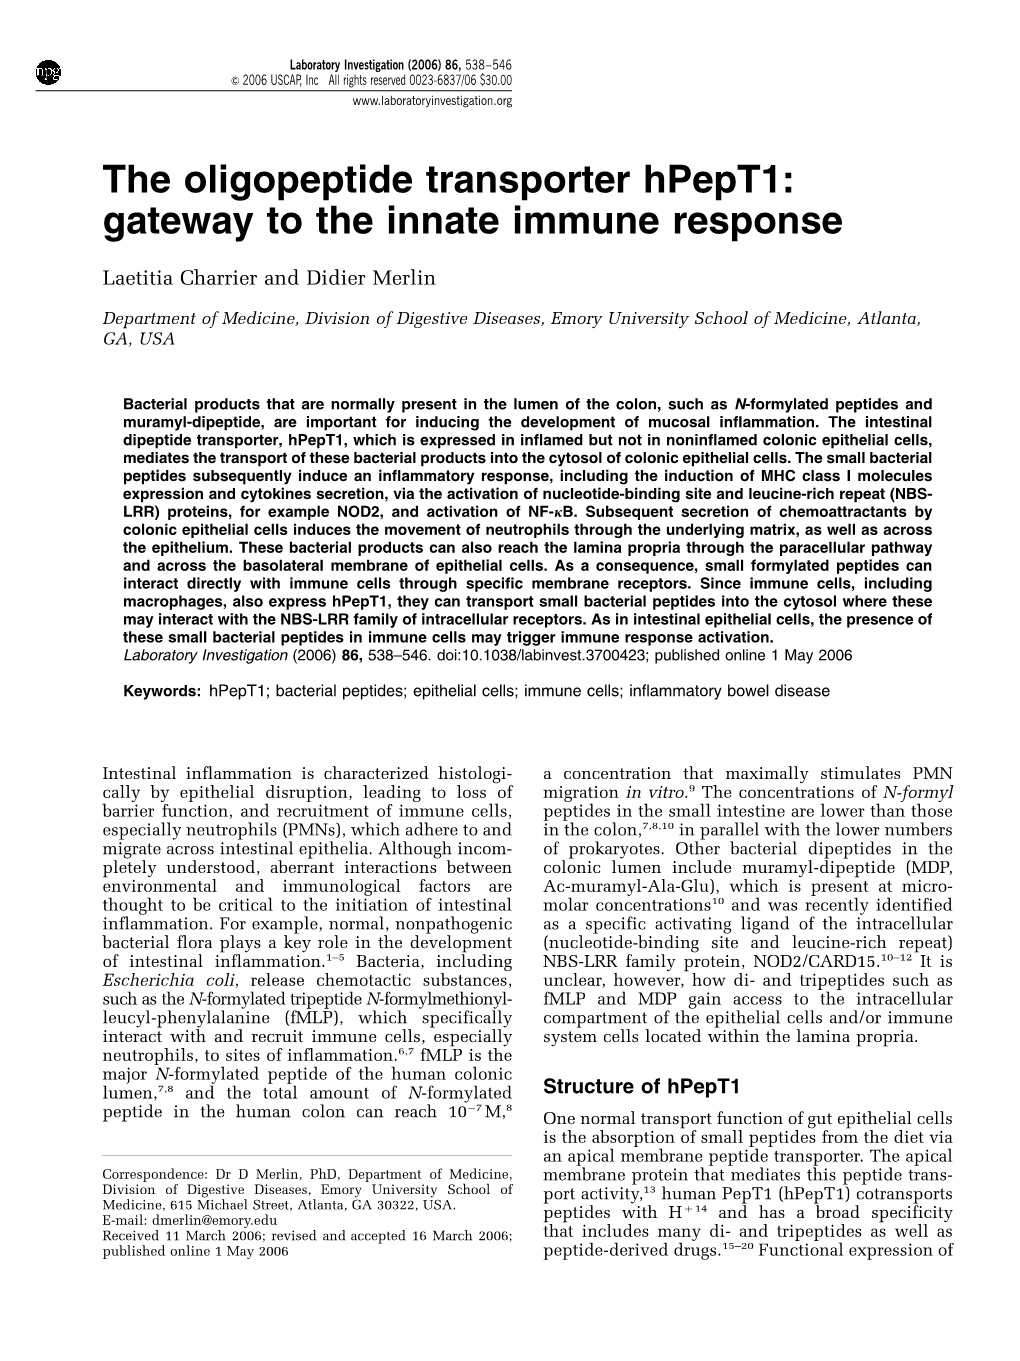 The Oligopeptide Transporter Hpept1: Gateway to the Innate Immune Response